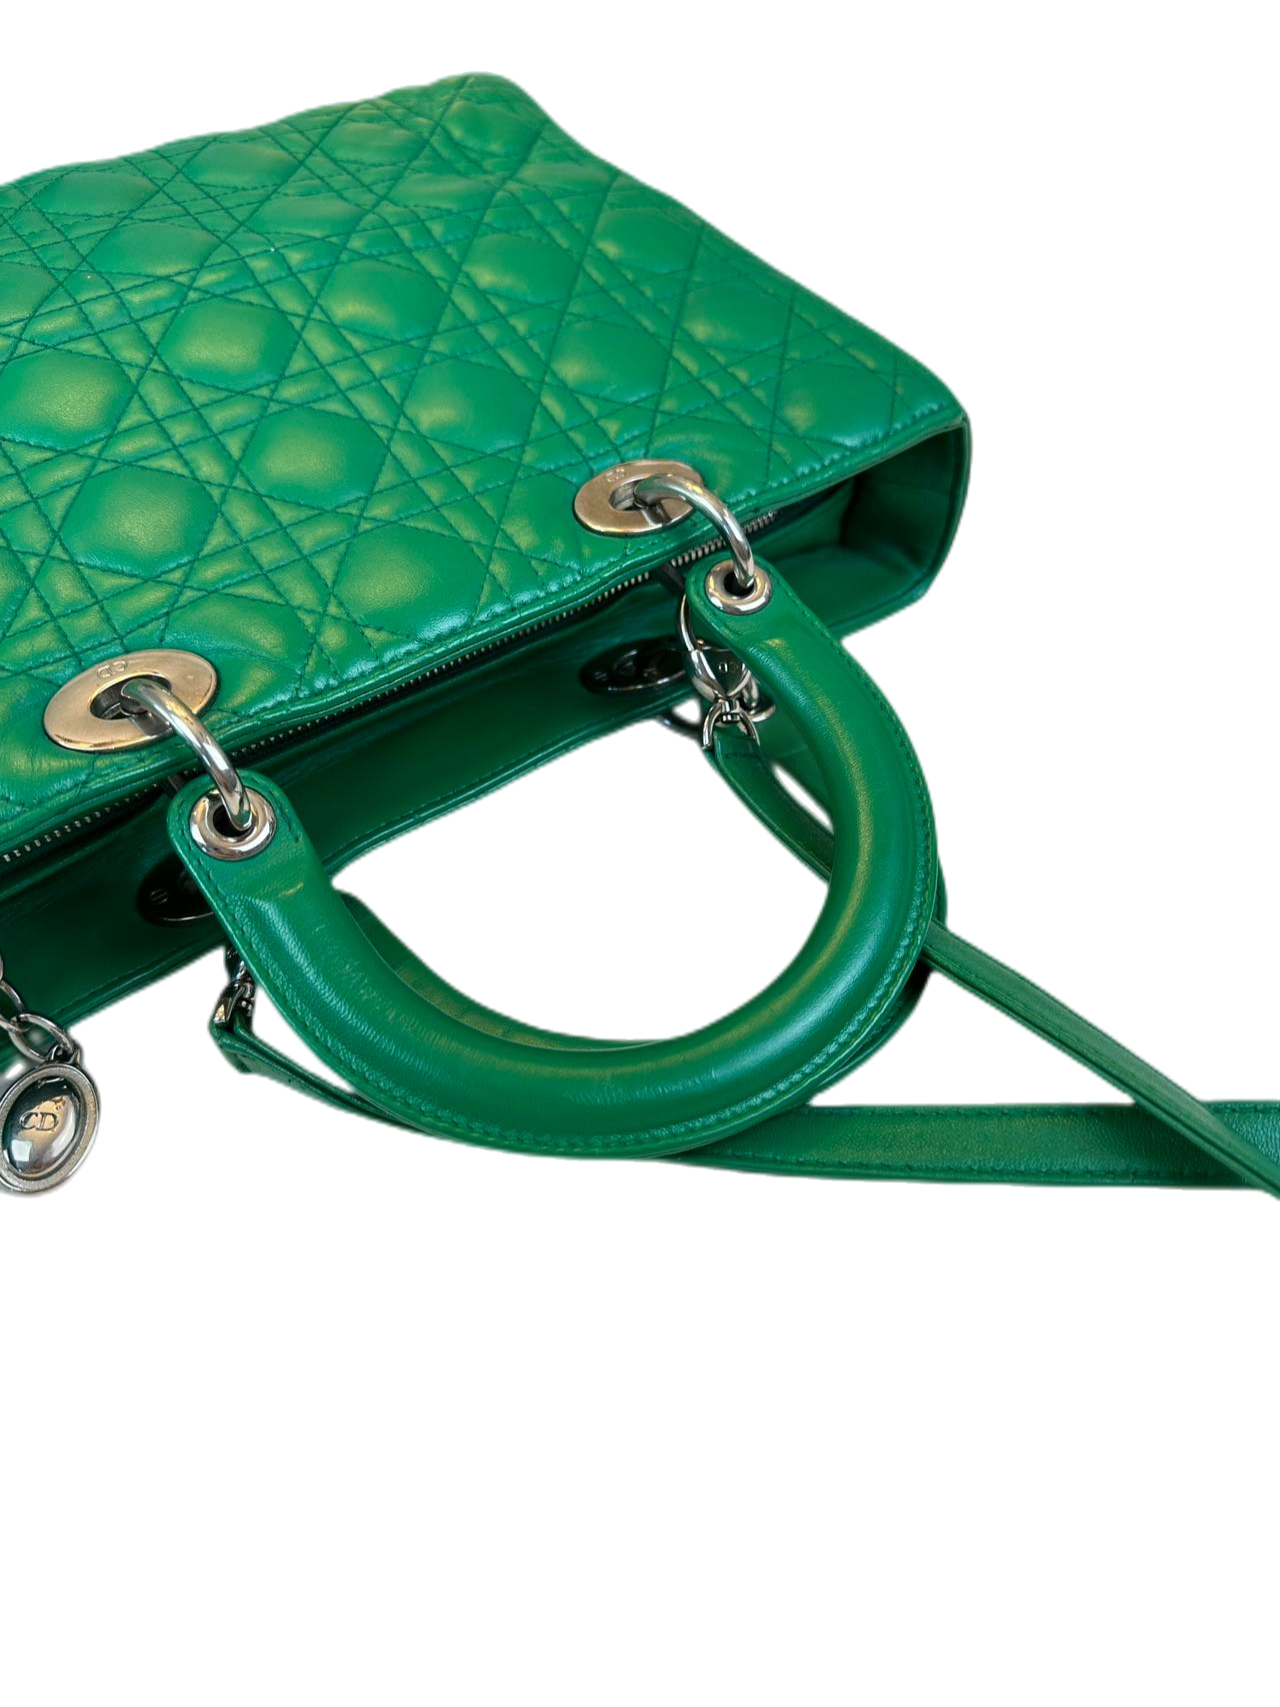 Preloved Christian Dior Green Leather Large Lady Dior Shoulder Bag